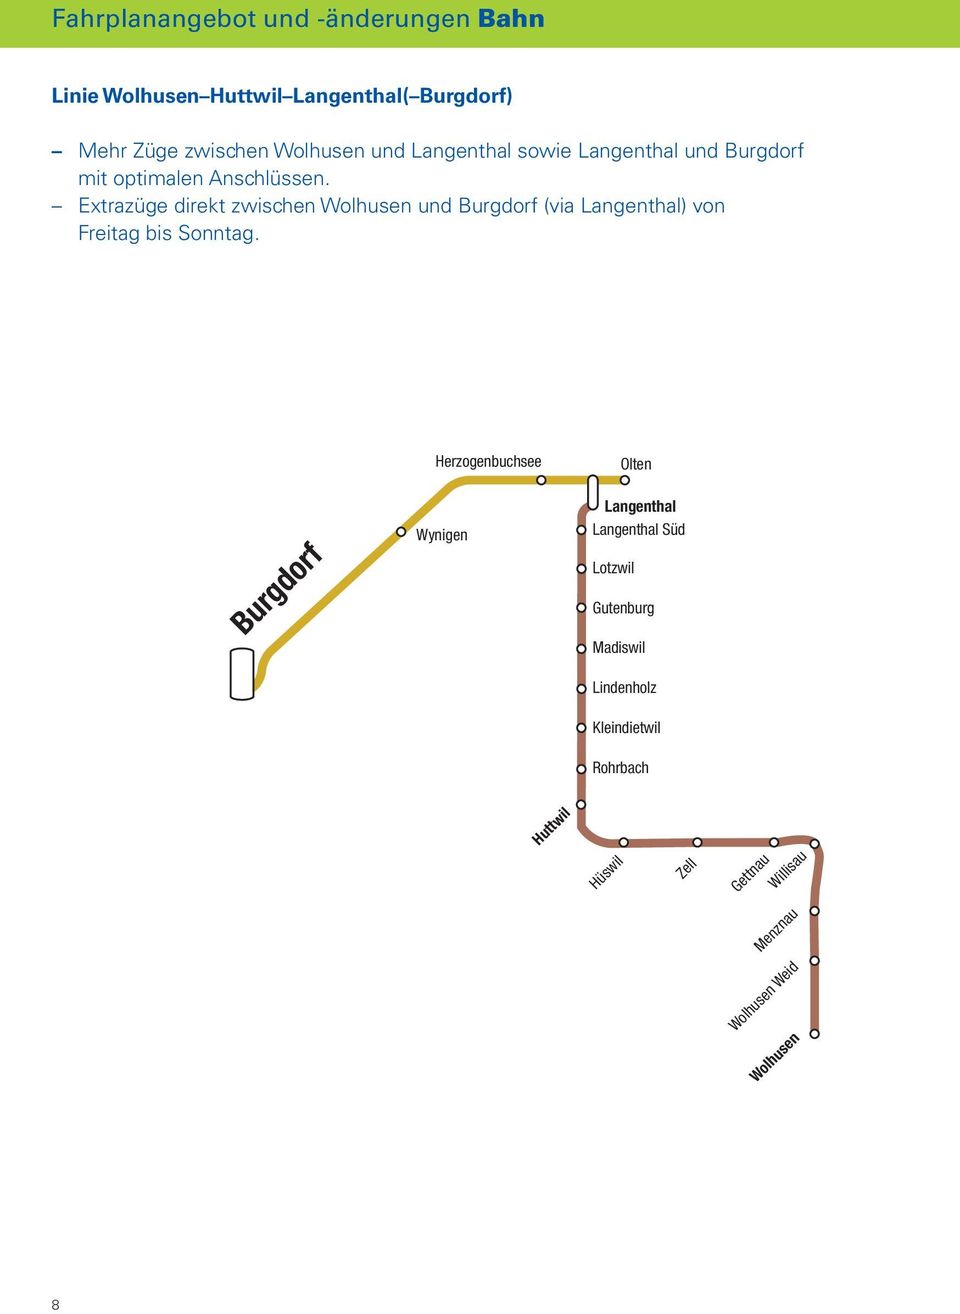 Extrazüge direkt zwischen Wolhusen und Burgdorf (via Langenthal) von Freitag bis Sonntag.